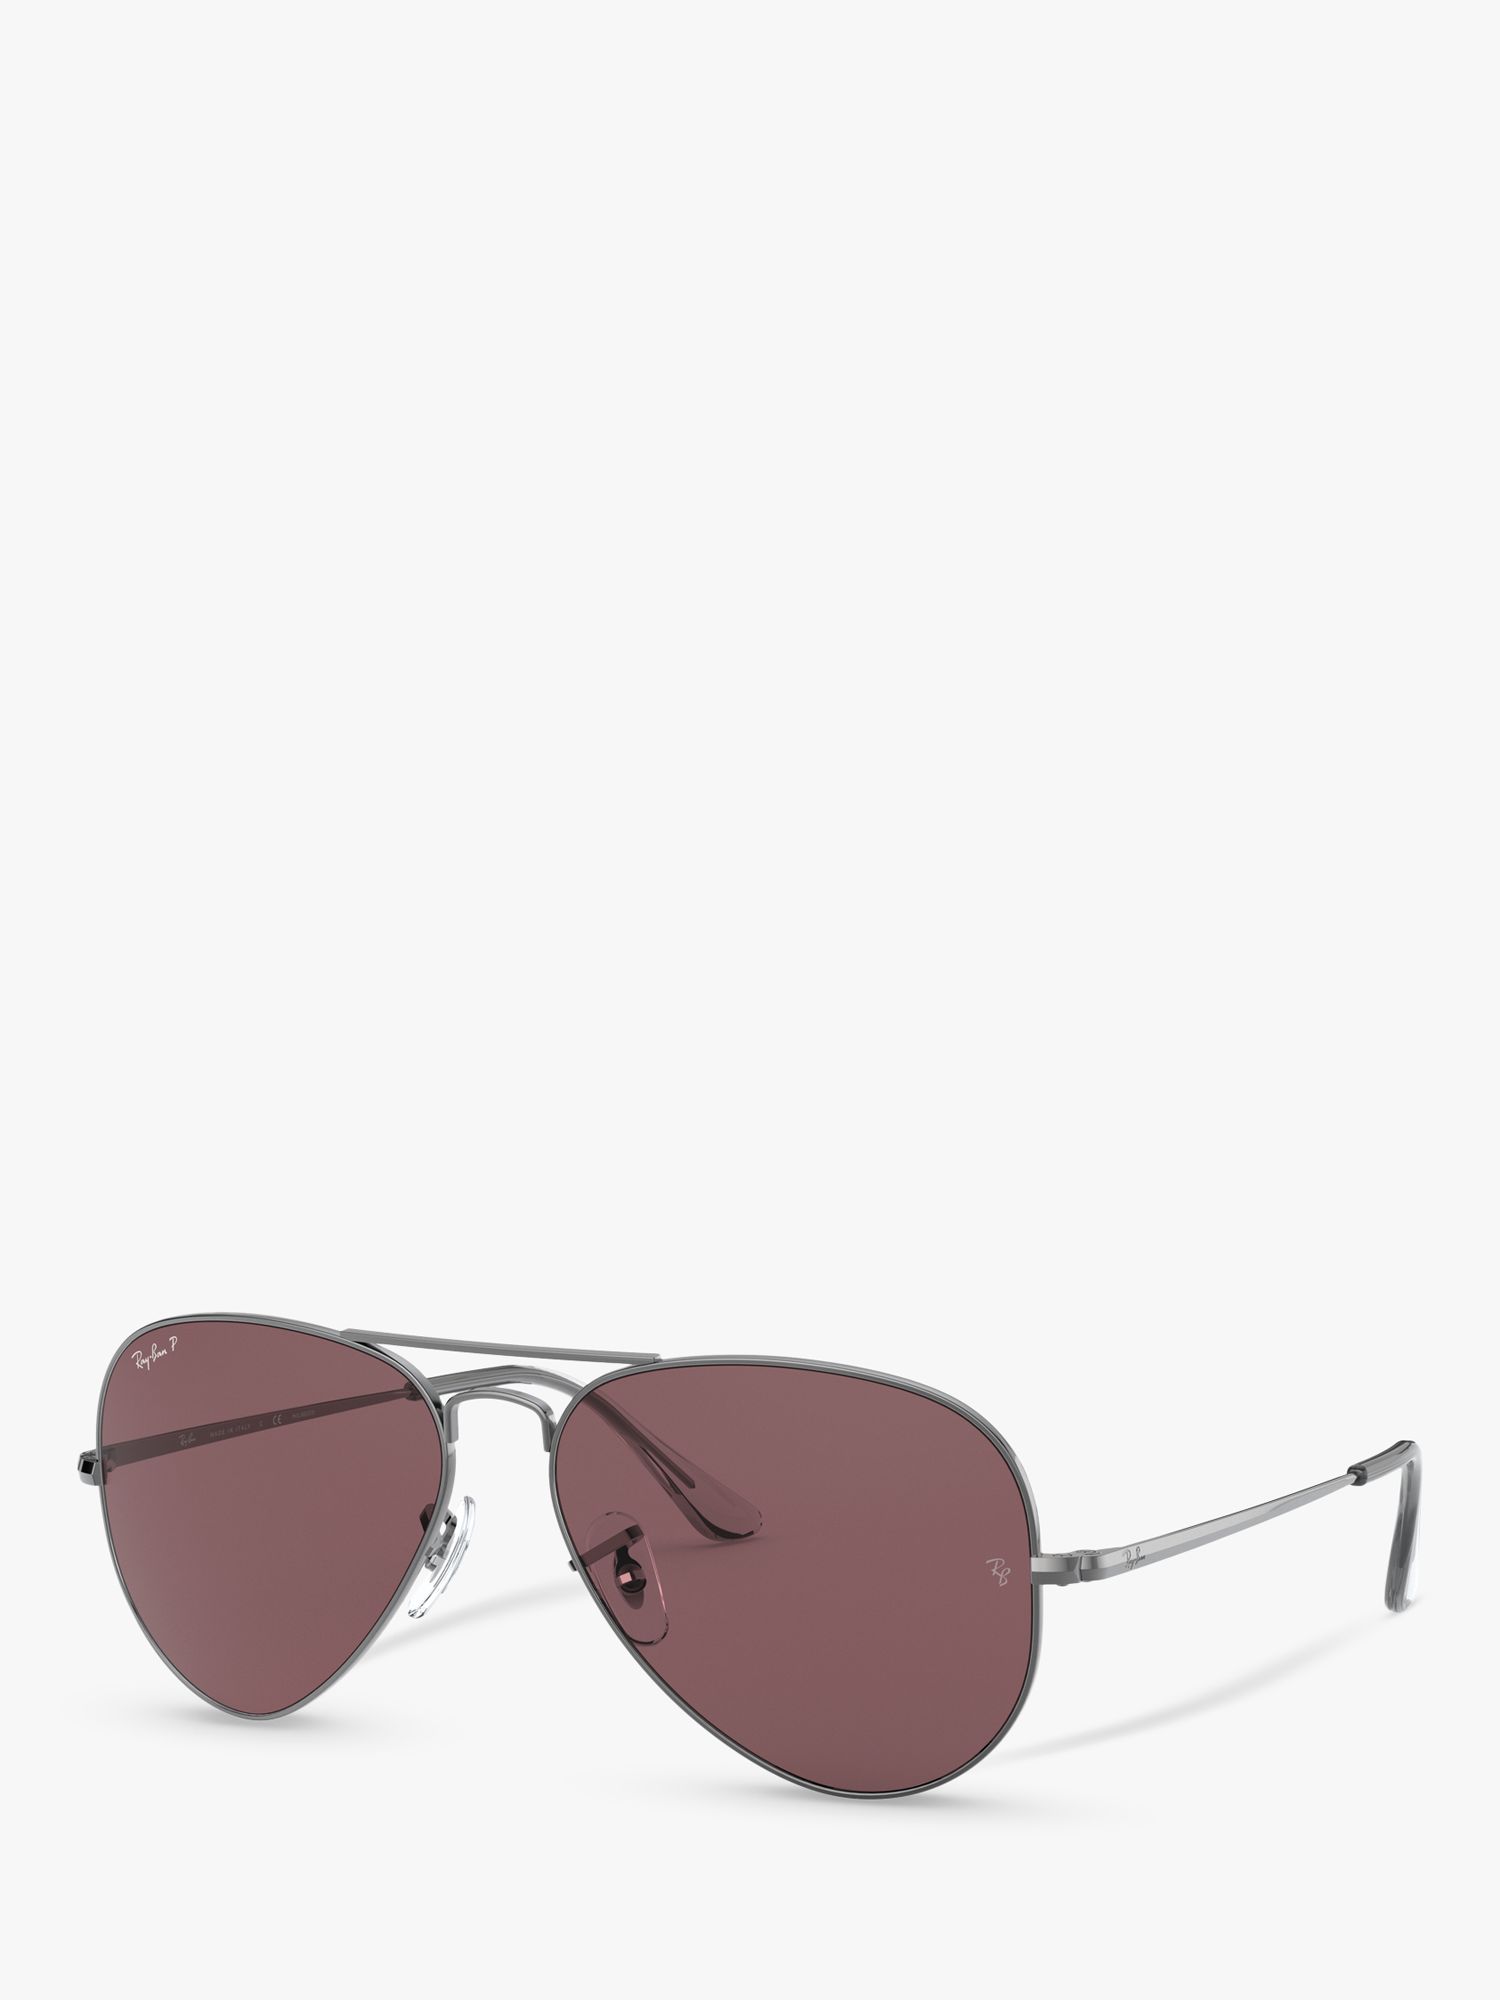 Ray-Ban RB3689 Поляризованные солнцезащитные очки-авиаторы унисекс, бронза цена и фото